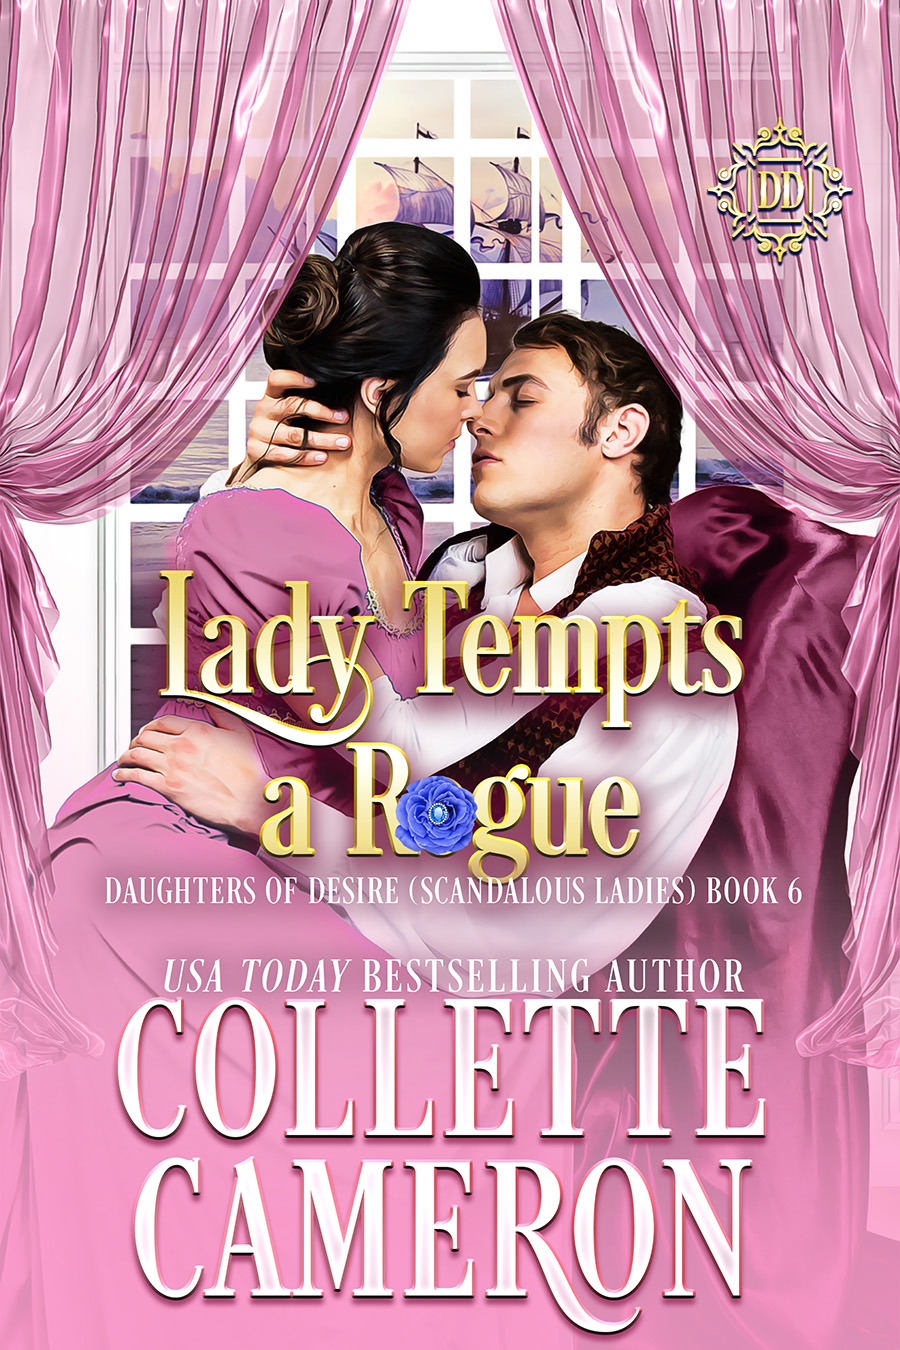 Collette's Historical Romances 24